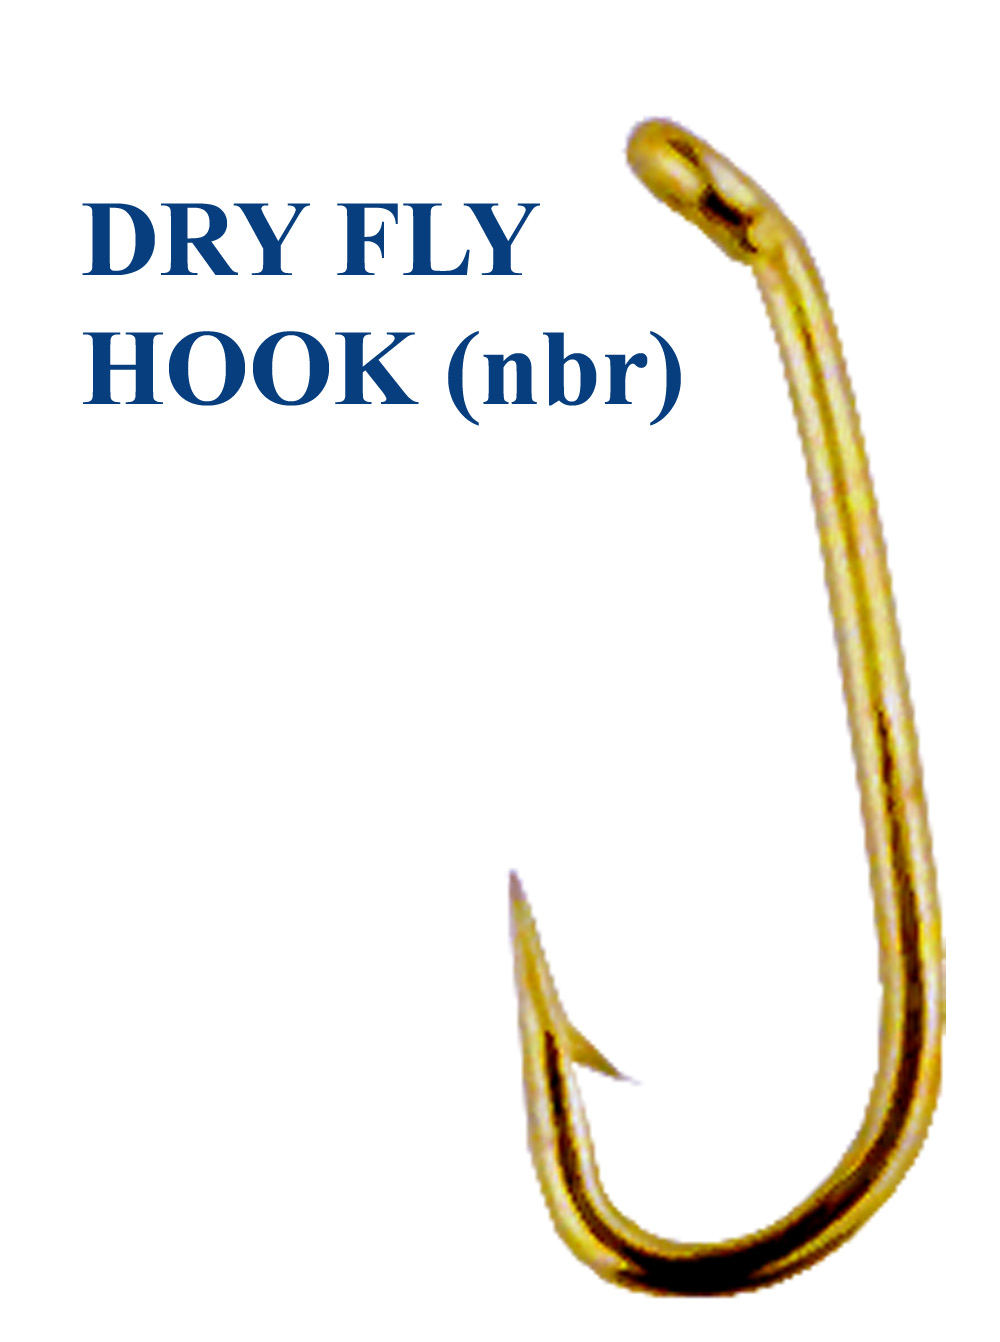 Крючки DRY FLY HOOK (nbr)